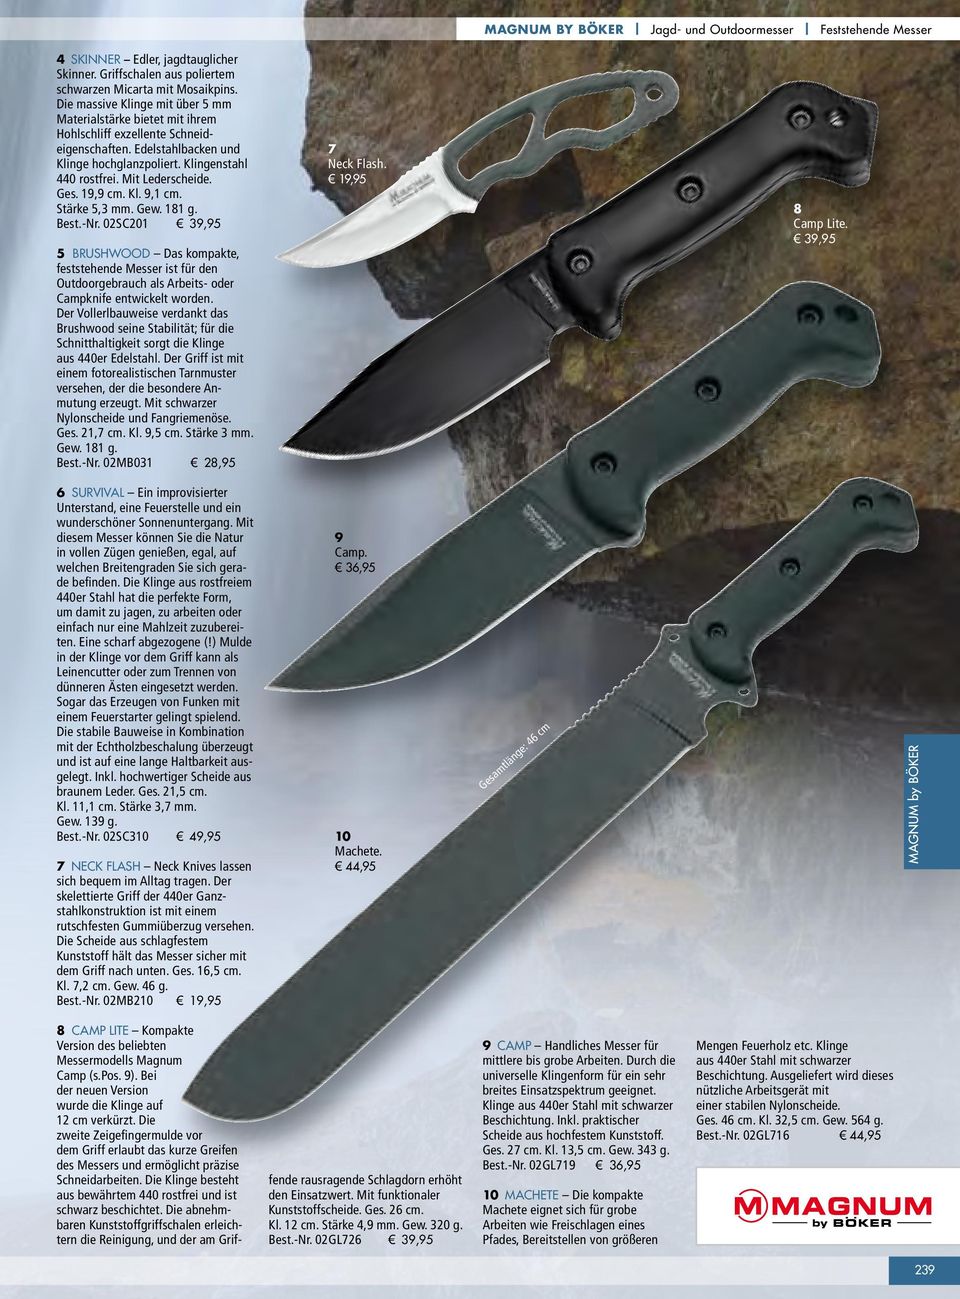 Ges. 19,9 cm. Kl. 9,1 cm. Stärke 5,3 mm. Gew. 181 g. Best.-Nr. 02SC201 39,95 5 BRUSHWOOD Das kompakte, feststehende Messer ist für den Outdoorgebrauch als Arbeits- oder Campknife entwickelt worden.